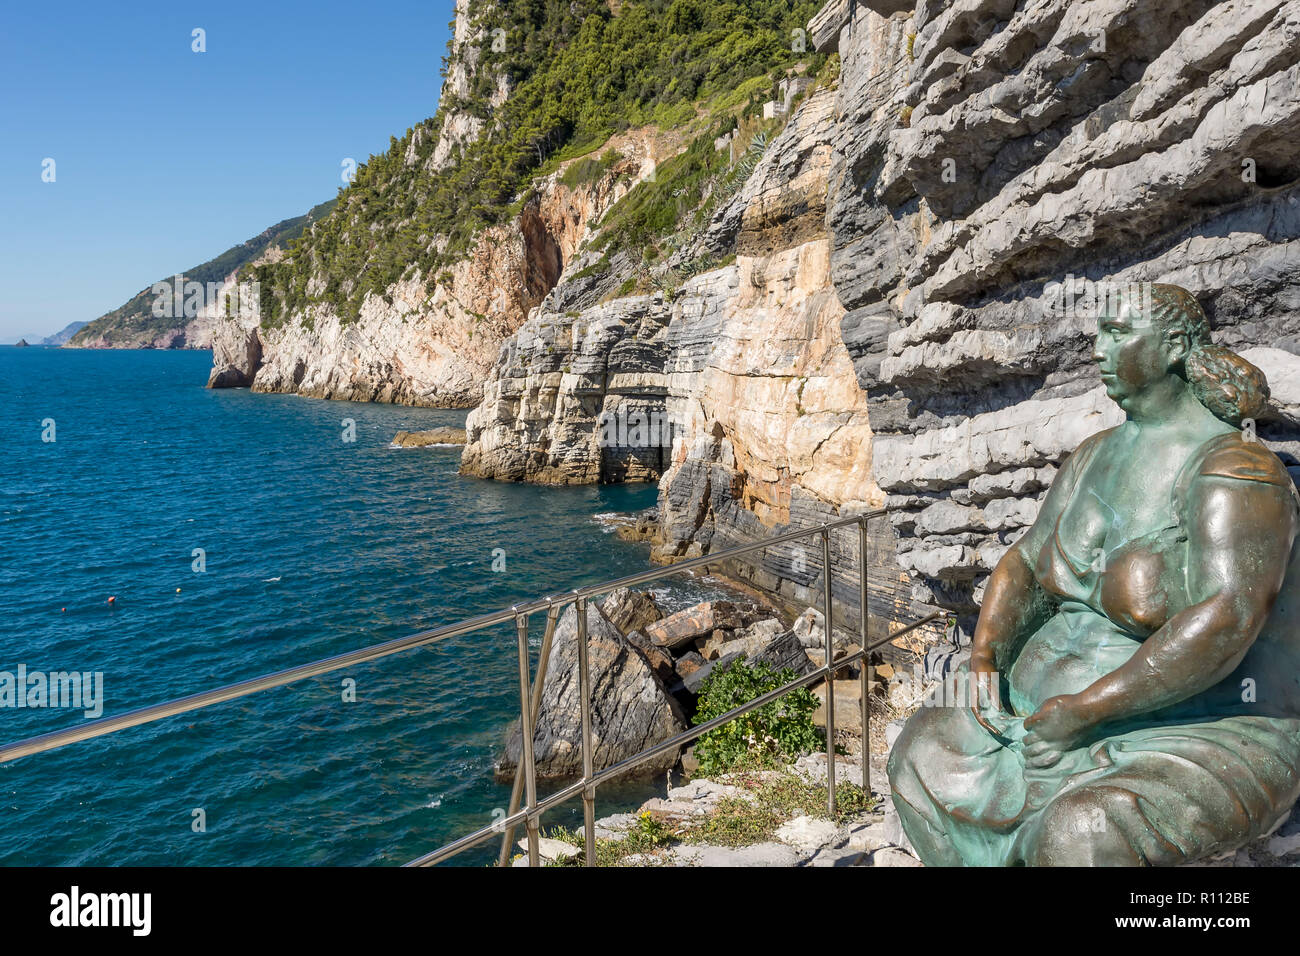 Belle vue sur la côte de Porto Venere jusqu'à les Cinque Terre et la grotte de Byron, ligurie, italie Banque D'Images